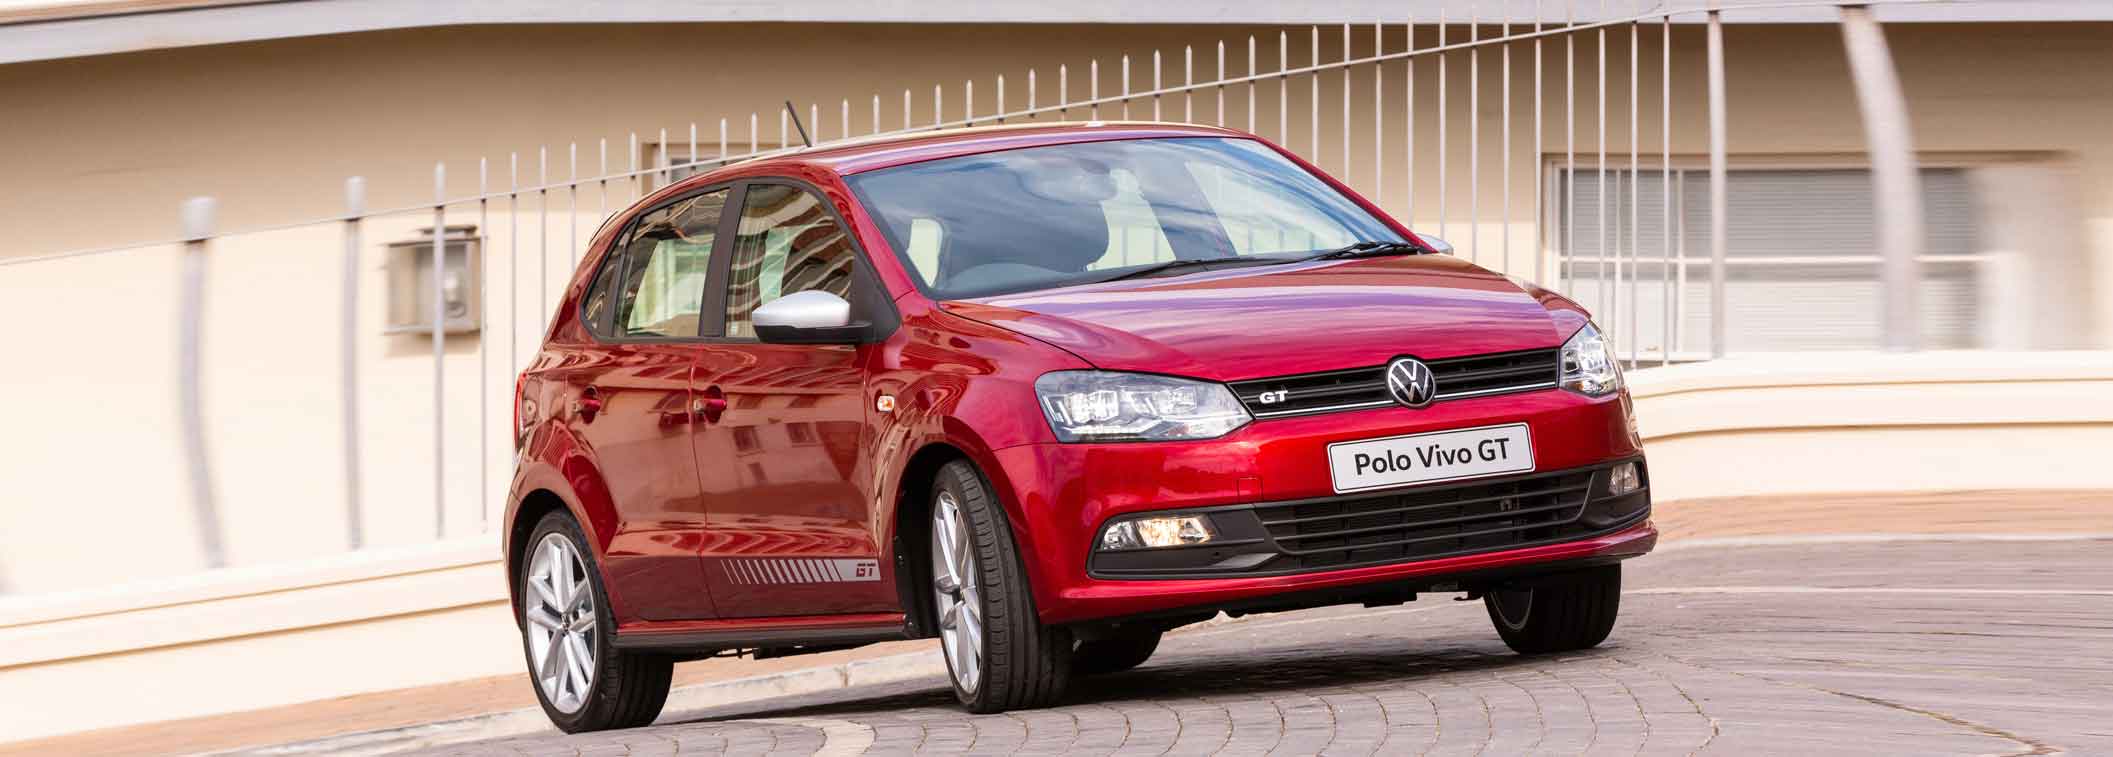 Volkswagen Polo Vivo GT updated